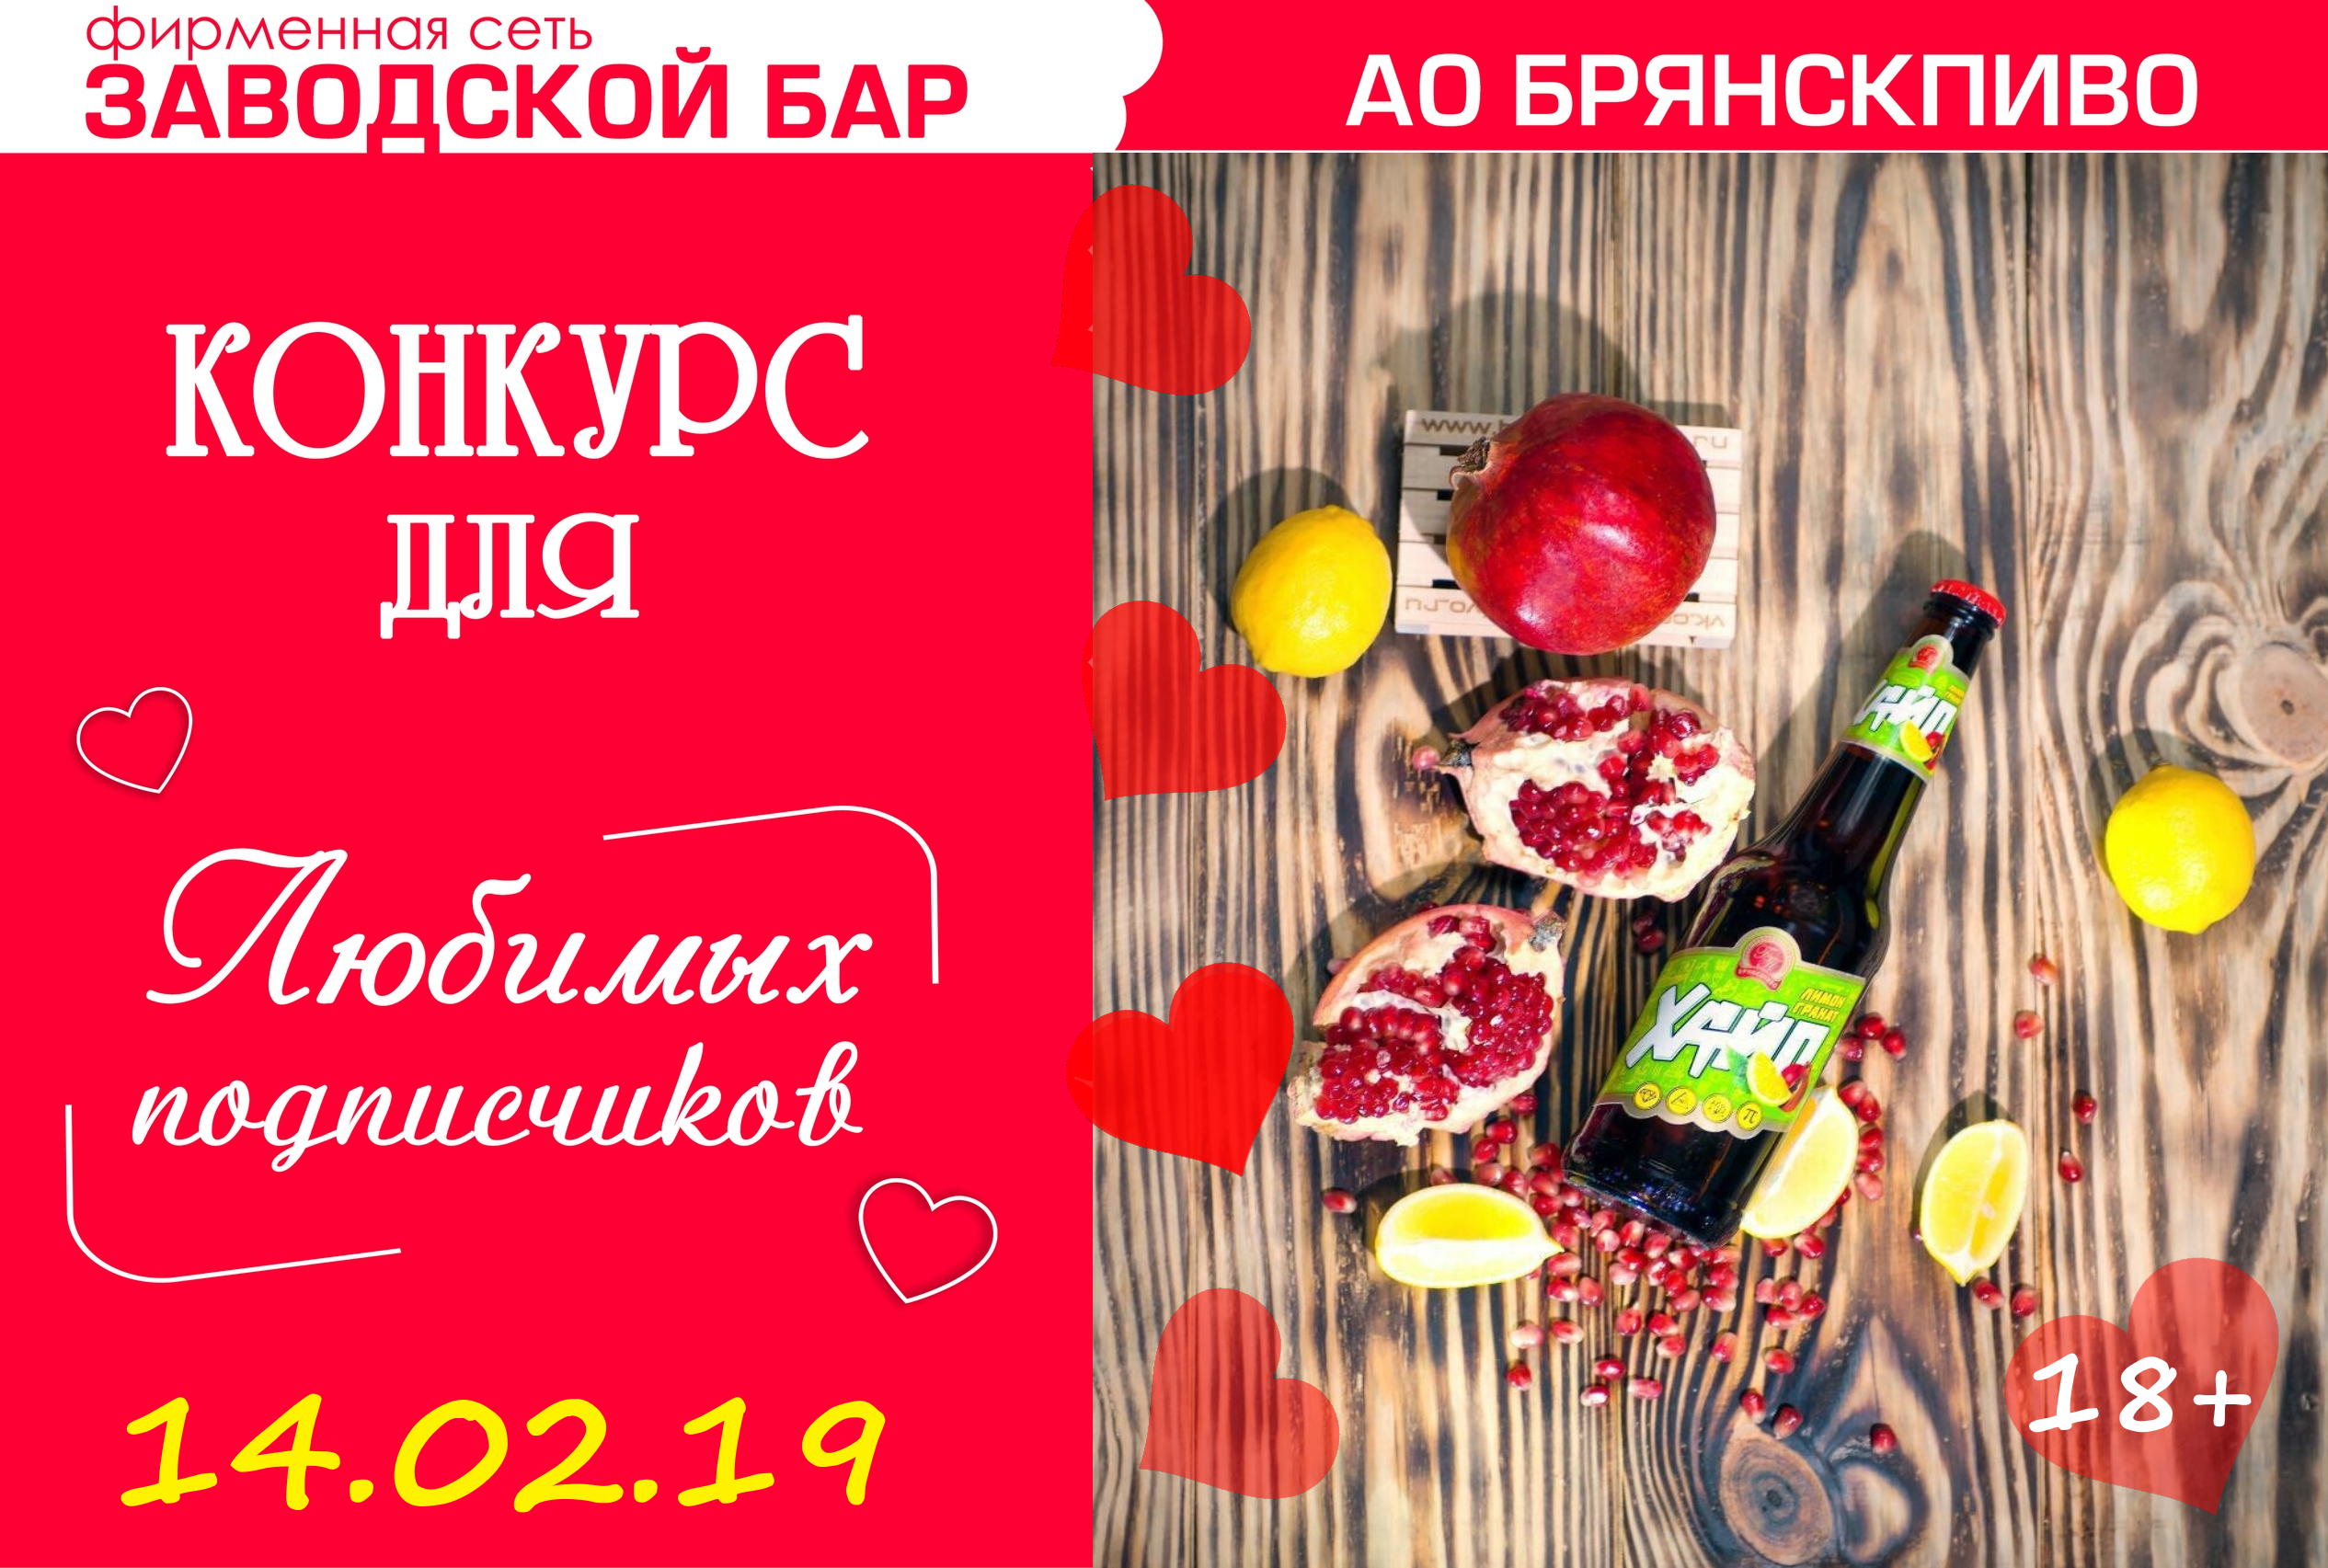 Примите участие в нашем конкурсе ко дню святого Валентина!